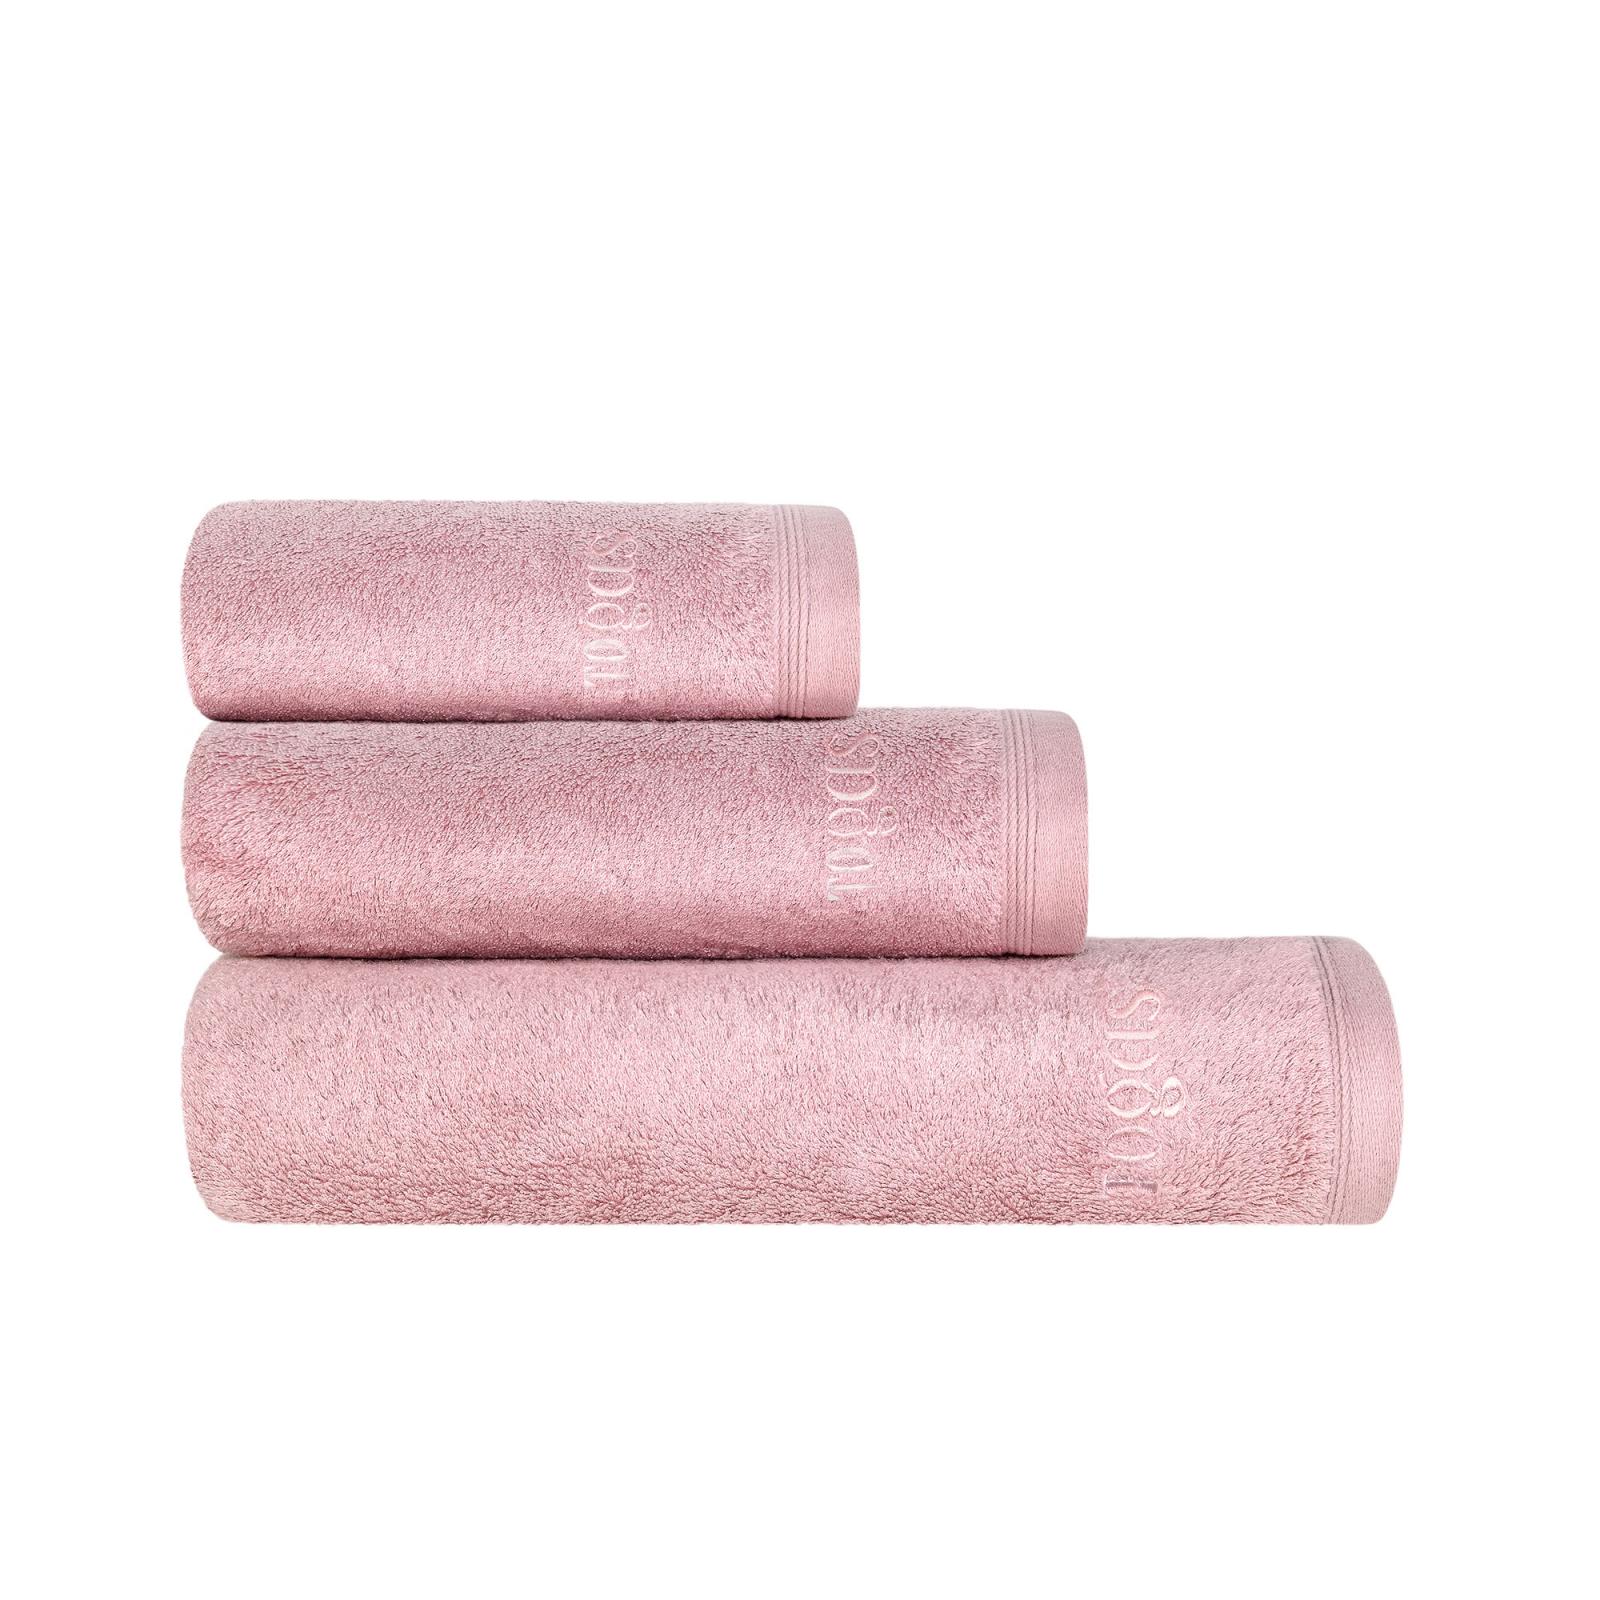 Полотенце 40х60 см Пуатье розовое Togas полотенце togas пуатье экру 100х150